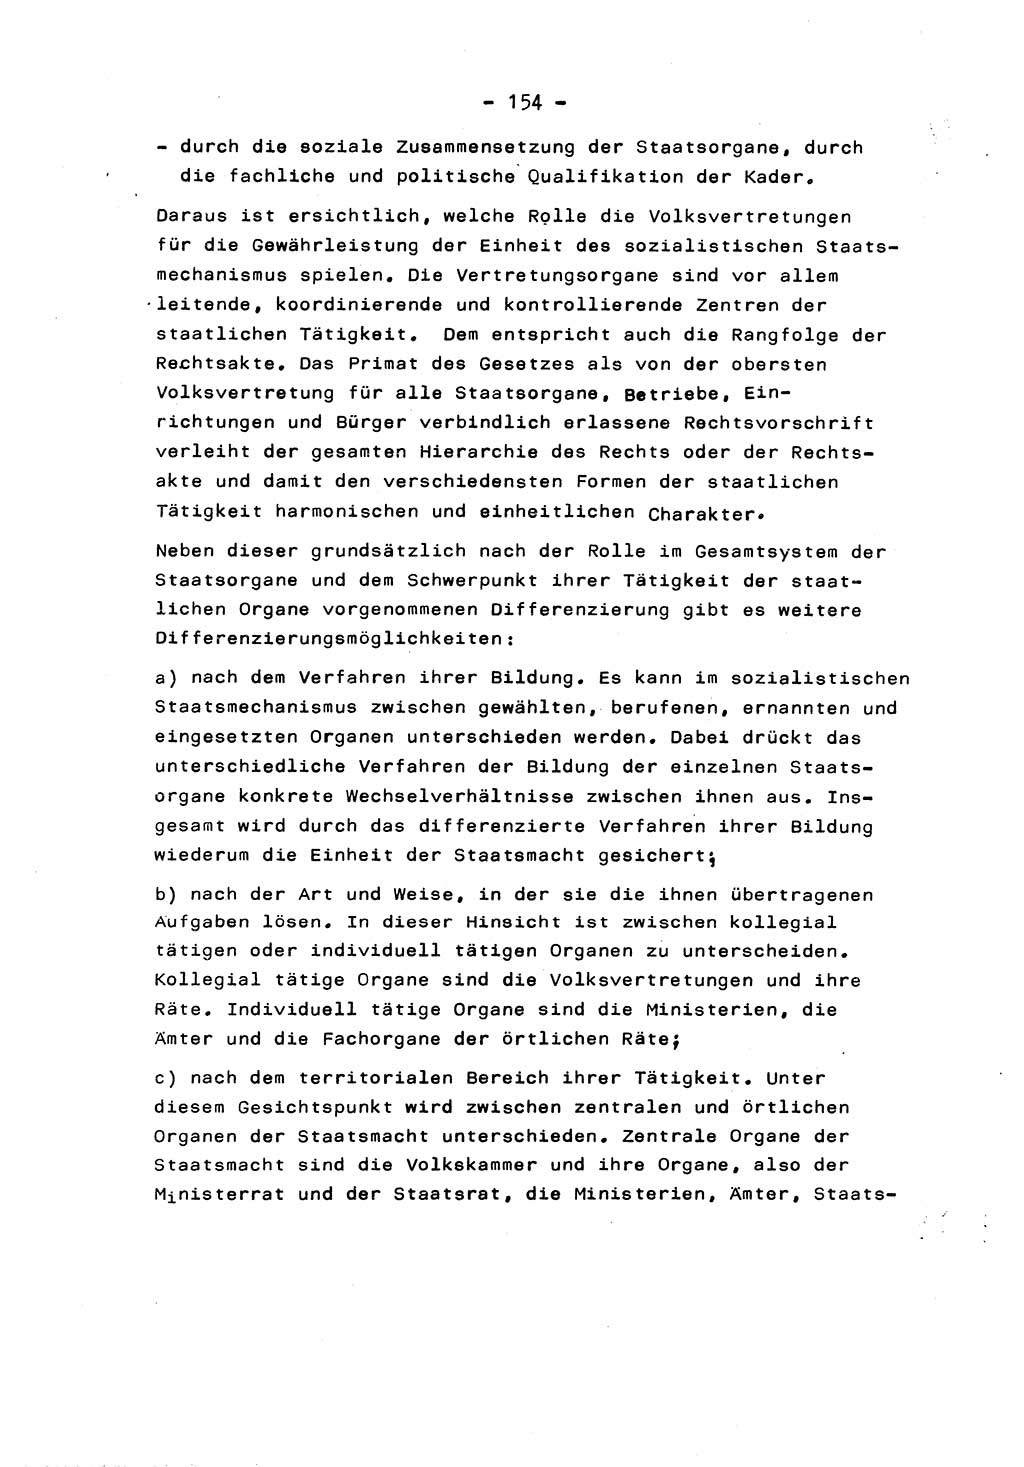 Marxistisch-leninistische Staats- und Rechtstheorie [Deutsche Demokratische Republik (DDR)] 1975, Seite 154 (ML St.-R.-Th. DDR 1975, S. 154)